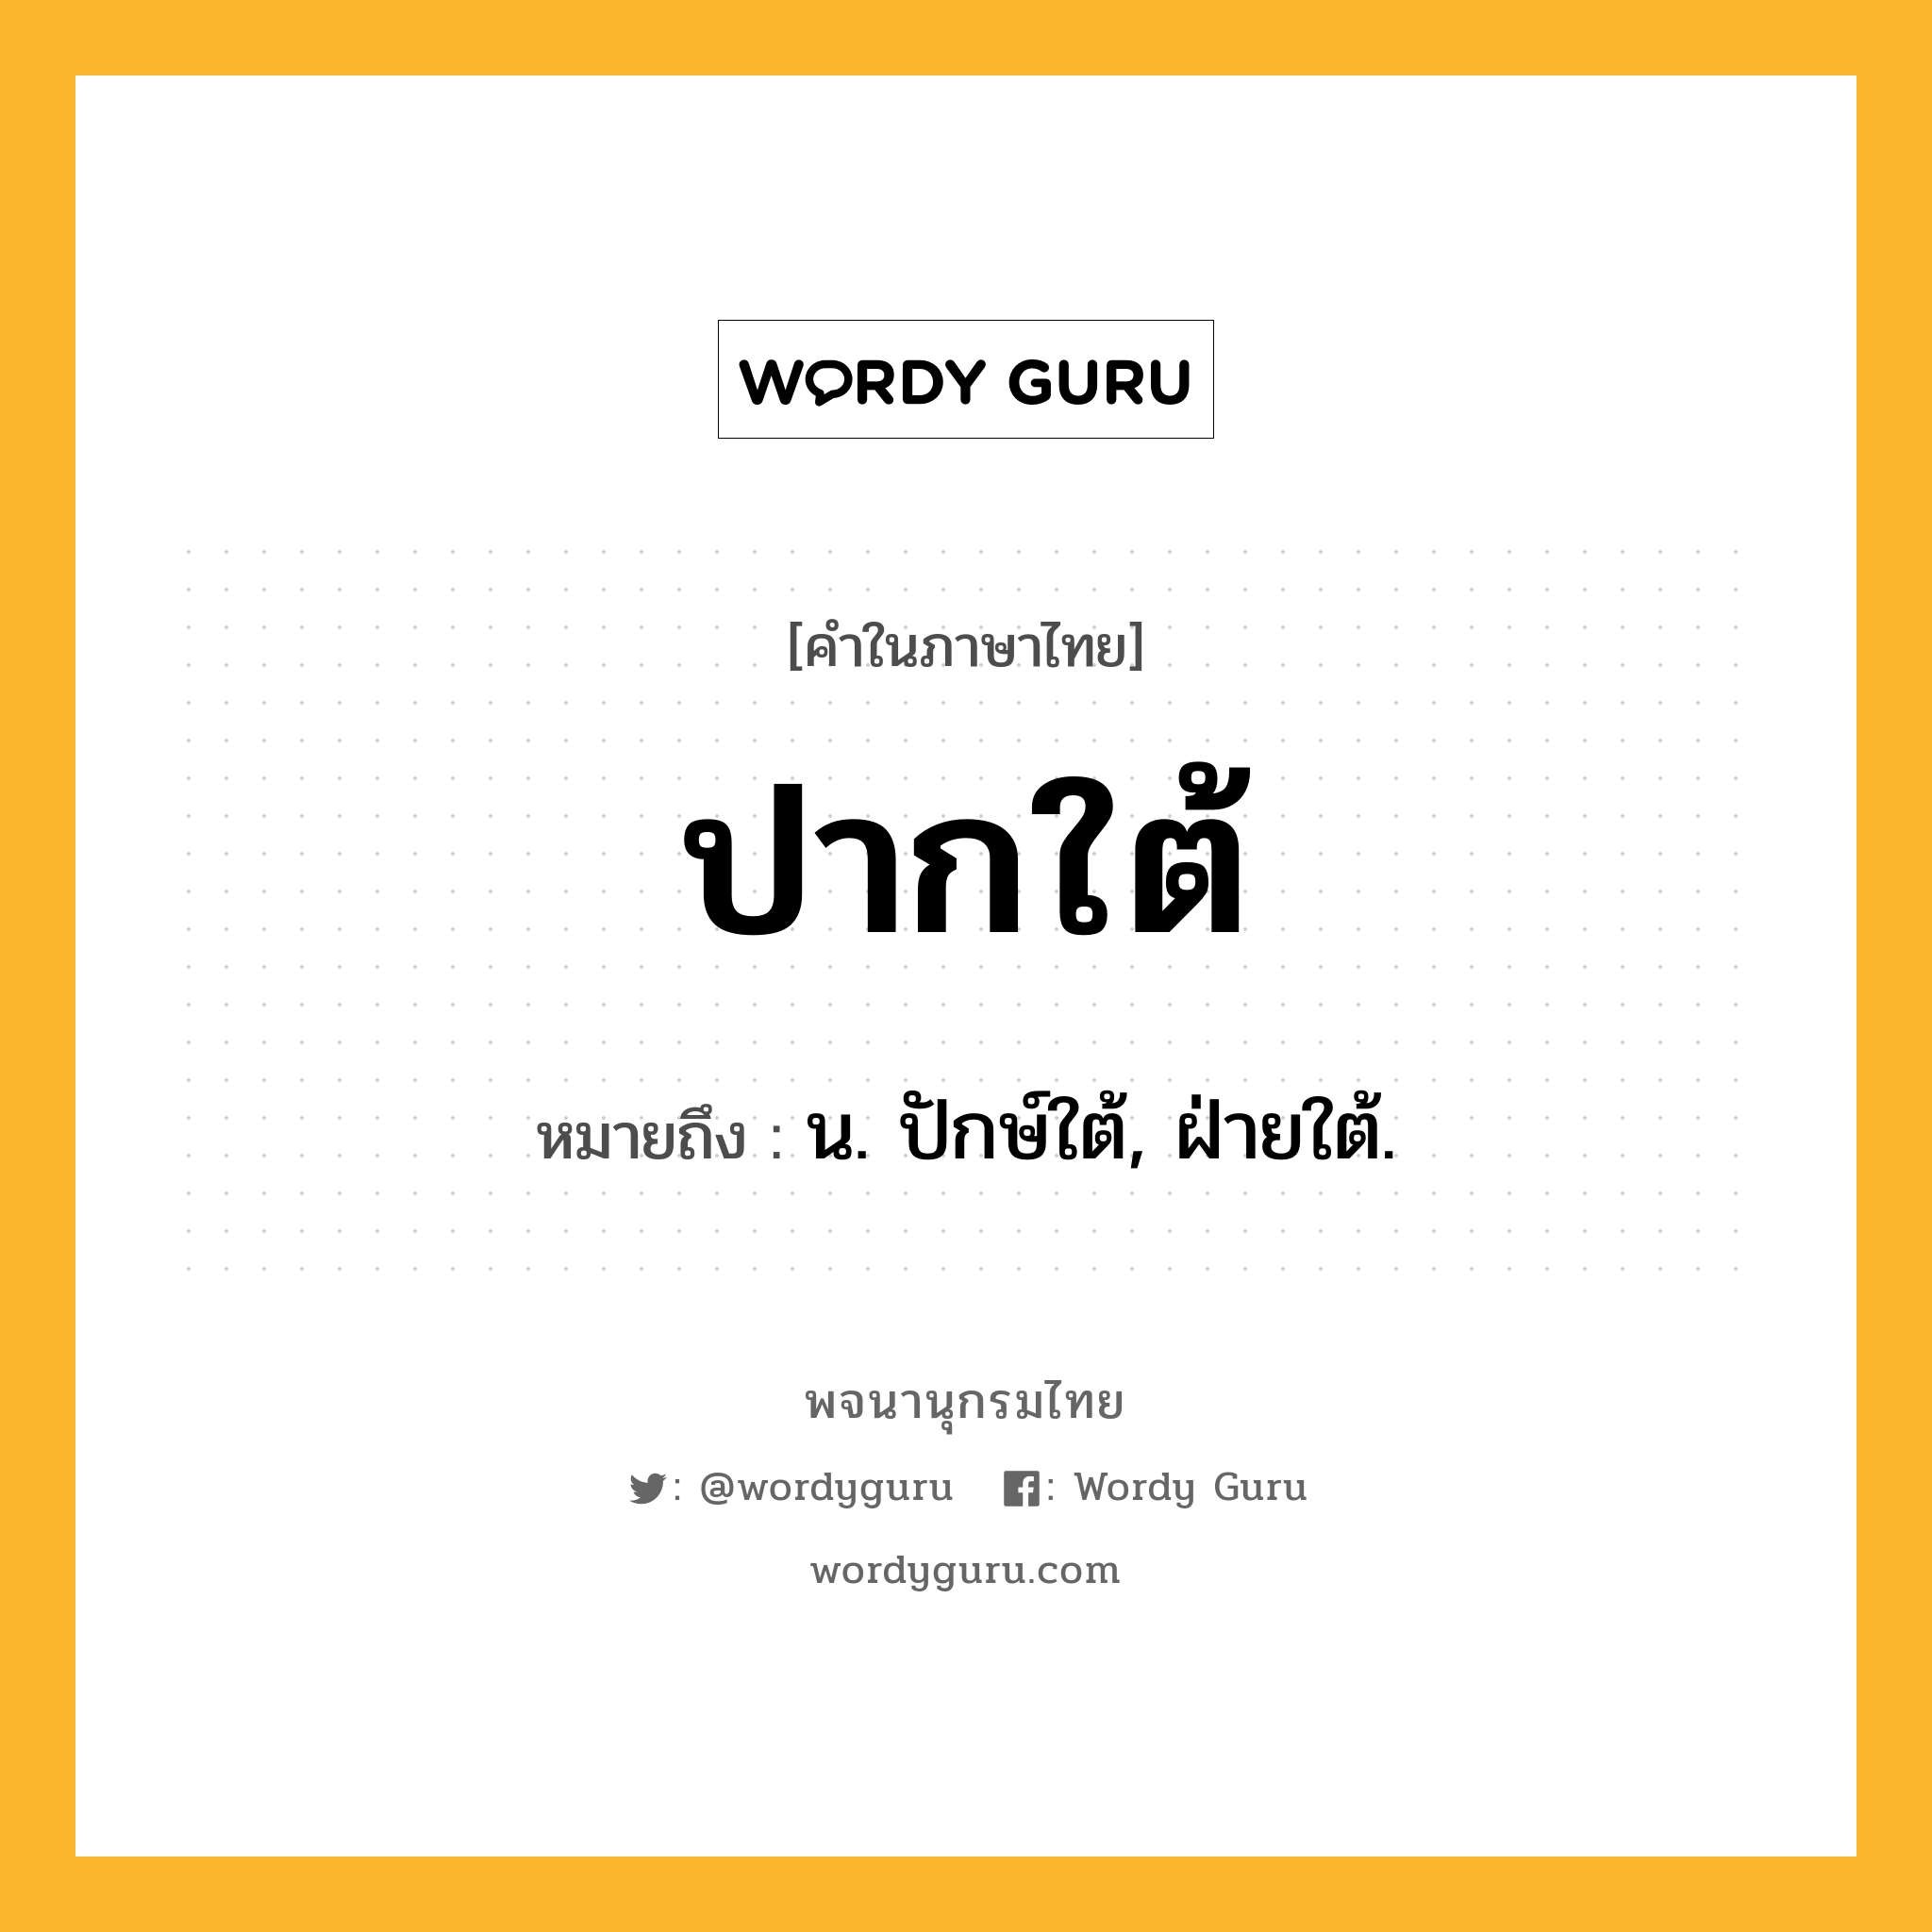 ปากใต้ หมายถึงอะไร?, คำในภาษาไทย ปากใต้ หมายถึง น. ปักษ์ใต้, ฝ่ายใต้.